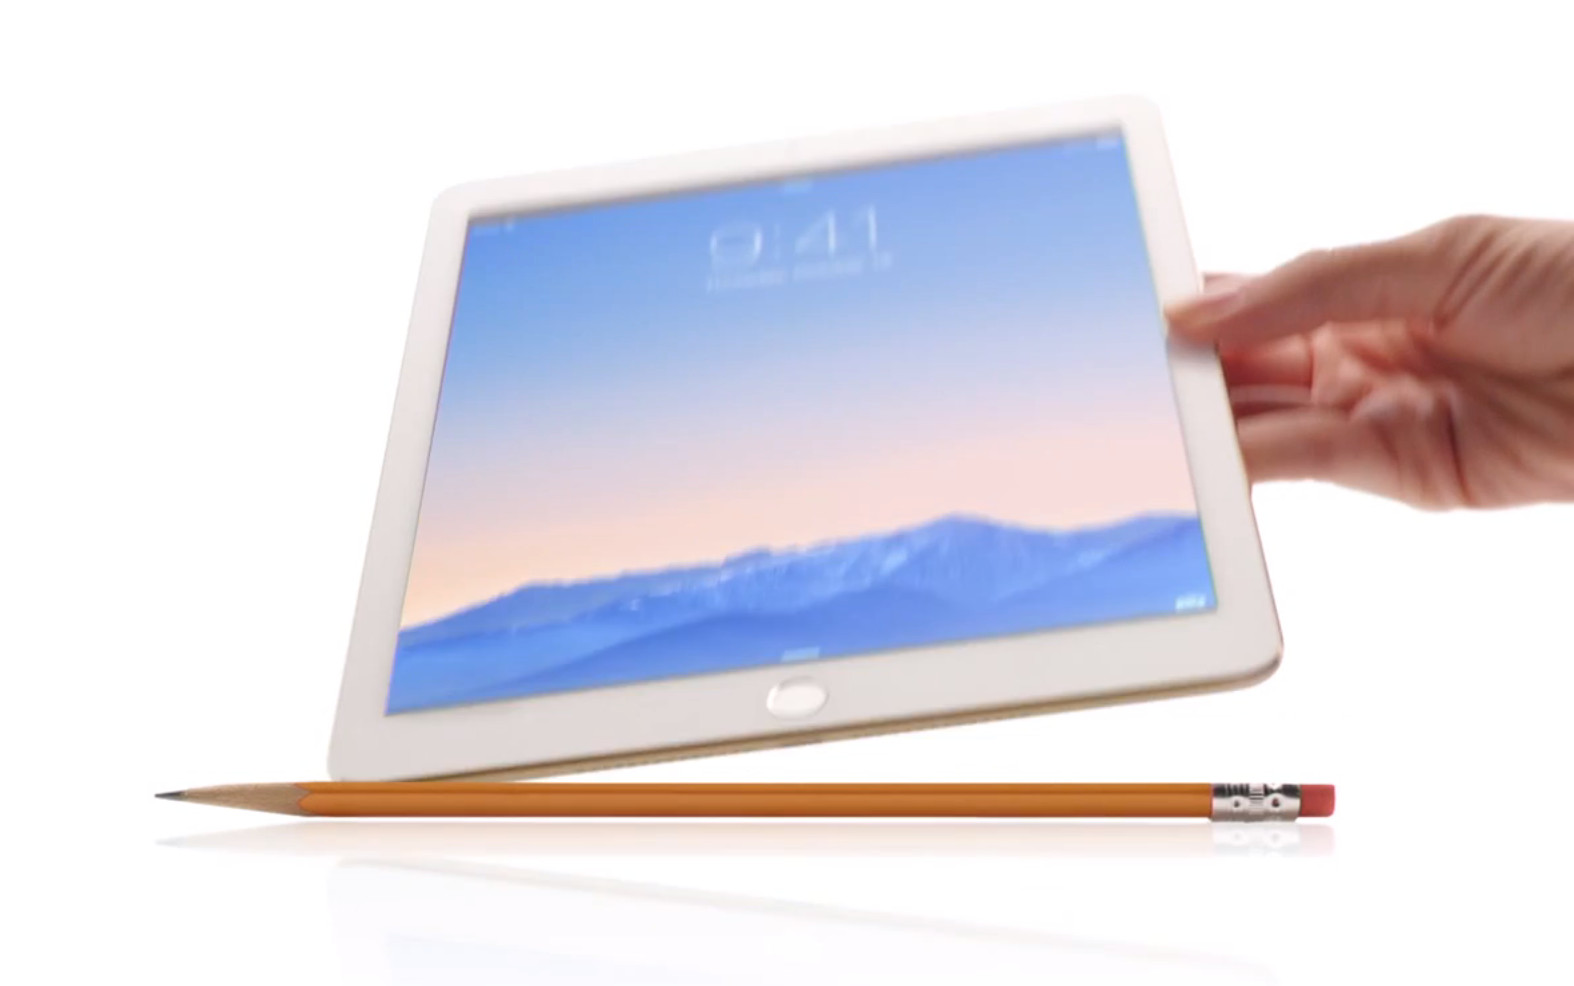 iPad AIr 2 - Reveal